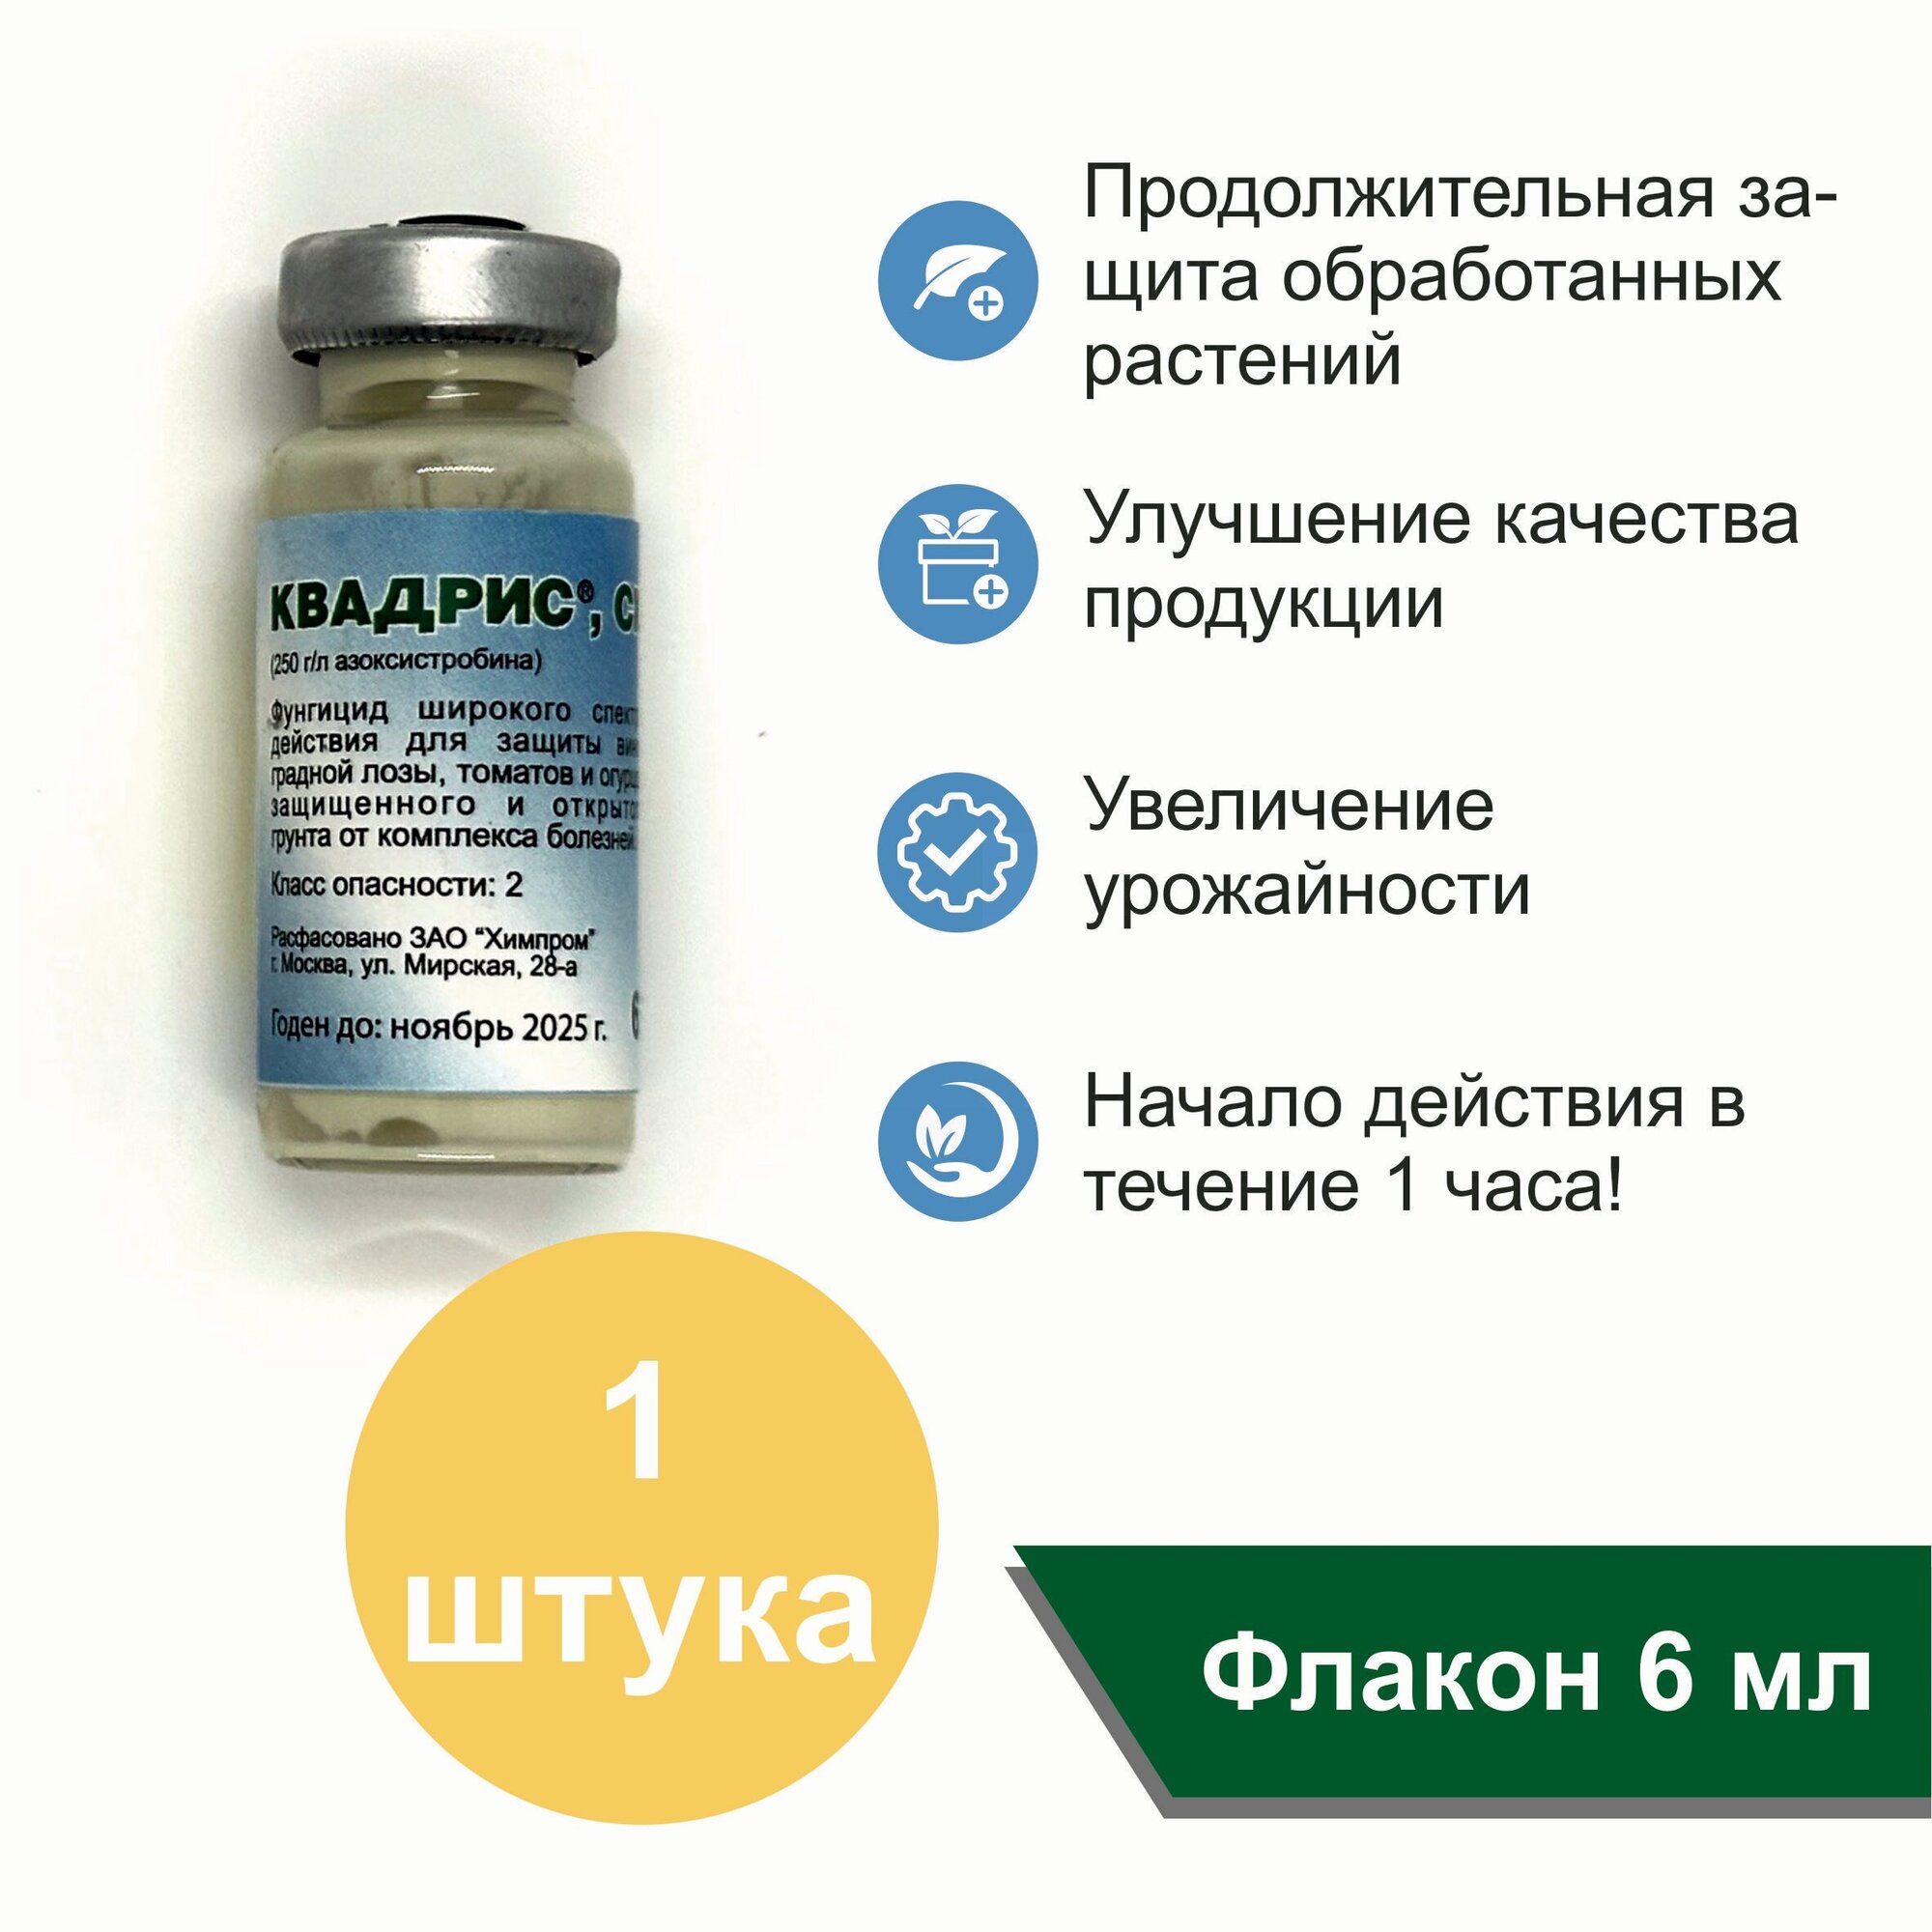 Квадрис, КС, 6 мл / Системный препарат для профилактики и лечения болезней растений х 1 флакон